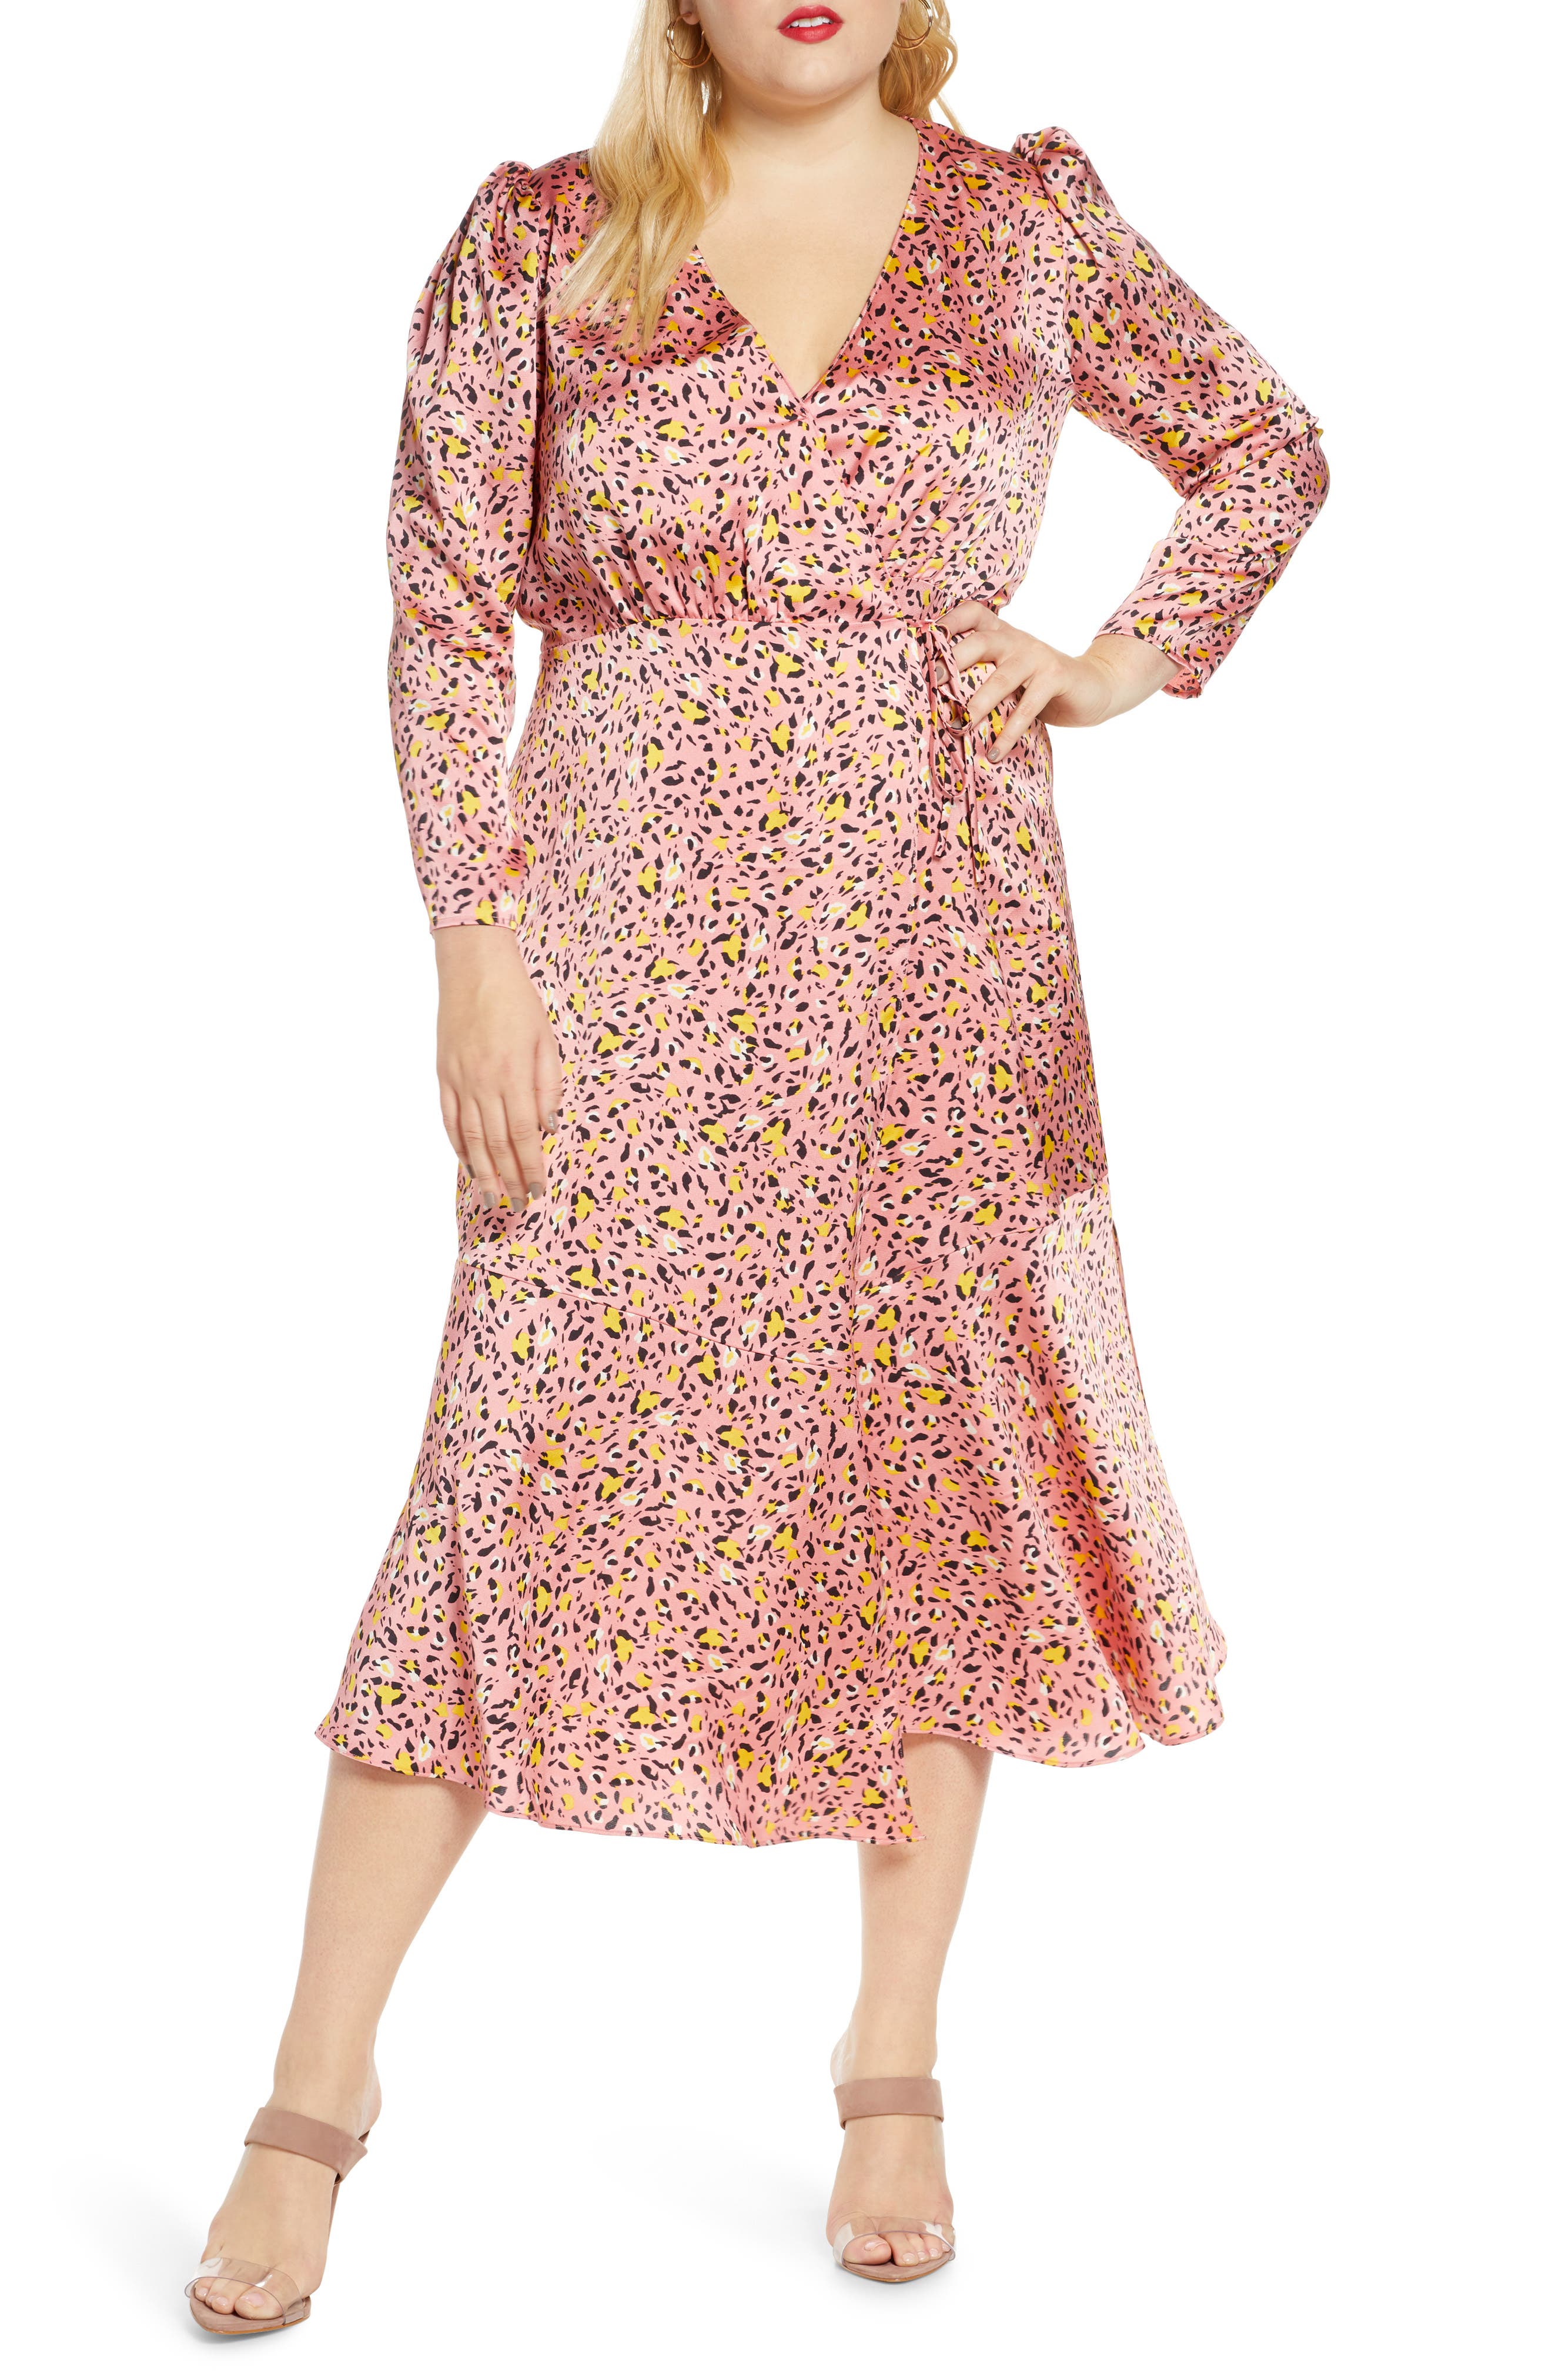 pink satin leopard print dress